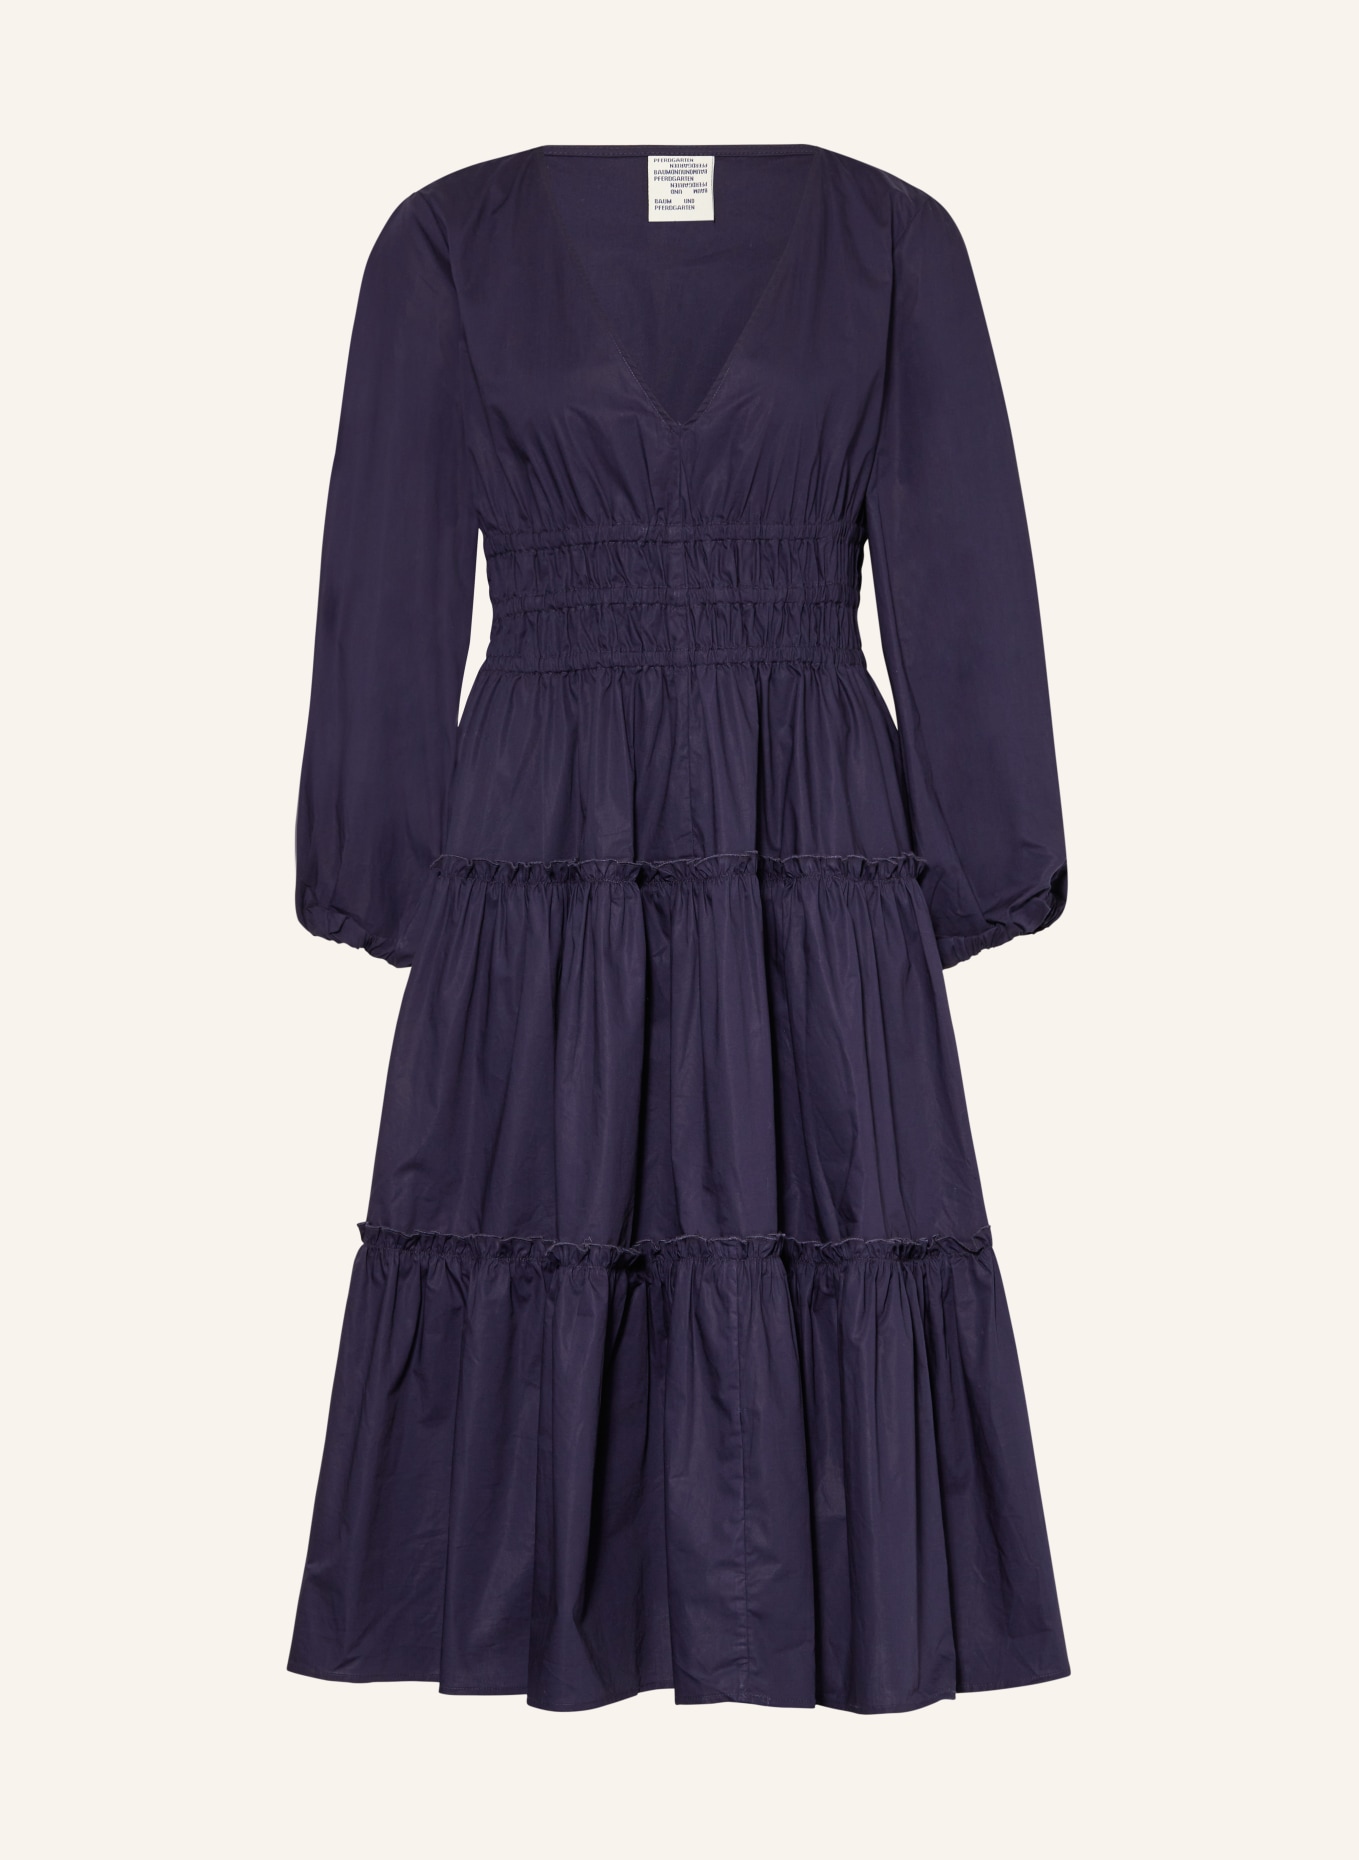 BAUM UND PFERDGARTEN Kleid AMELA mit Rüschen, Farbe: DUNKELBLAU (Bild 1)